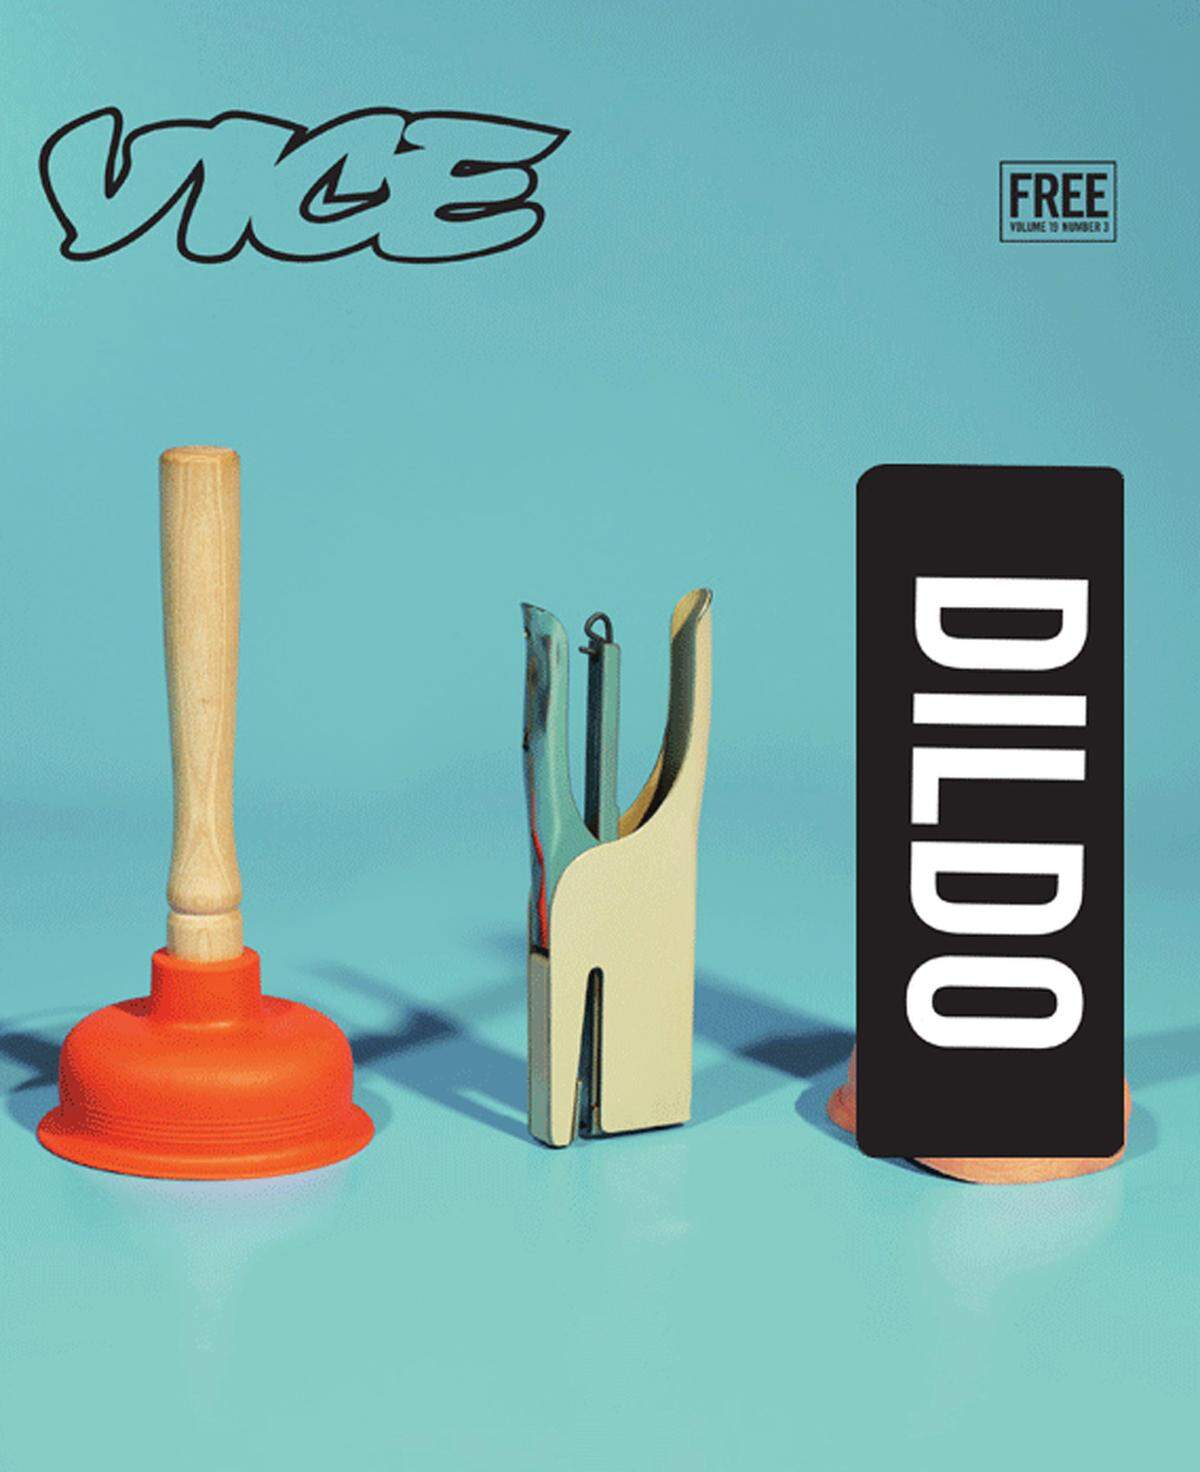 Maurizio Cattelans Cover für das Vice Magazin im März 2012 war auch zu explizit. Der abgebildete Plastikpenis wurde mit einem schwarzen Sticker zensiert.